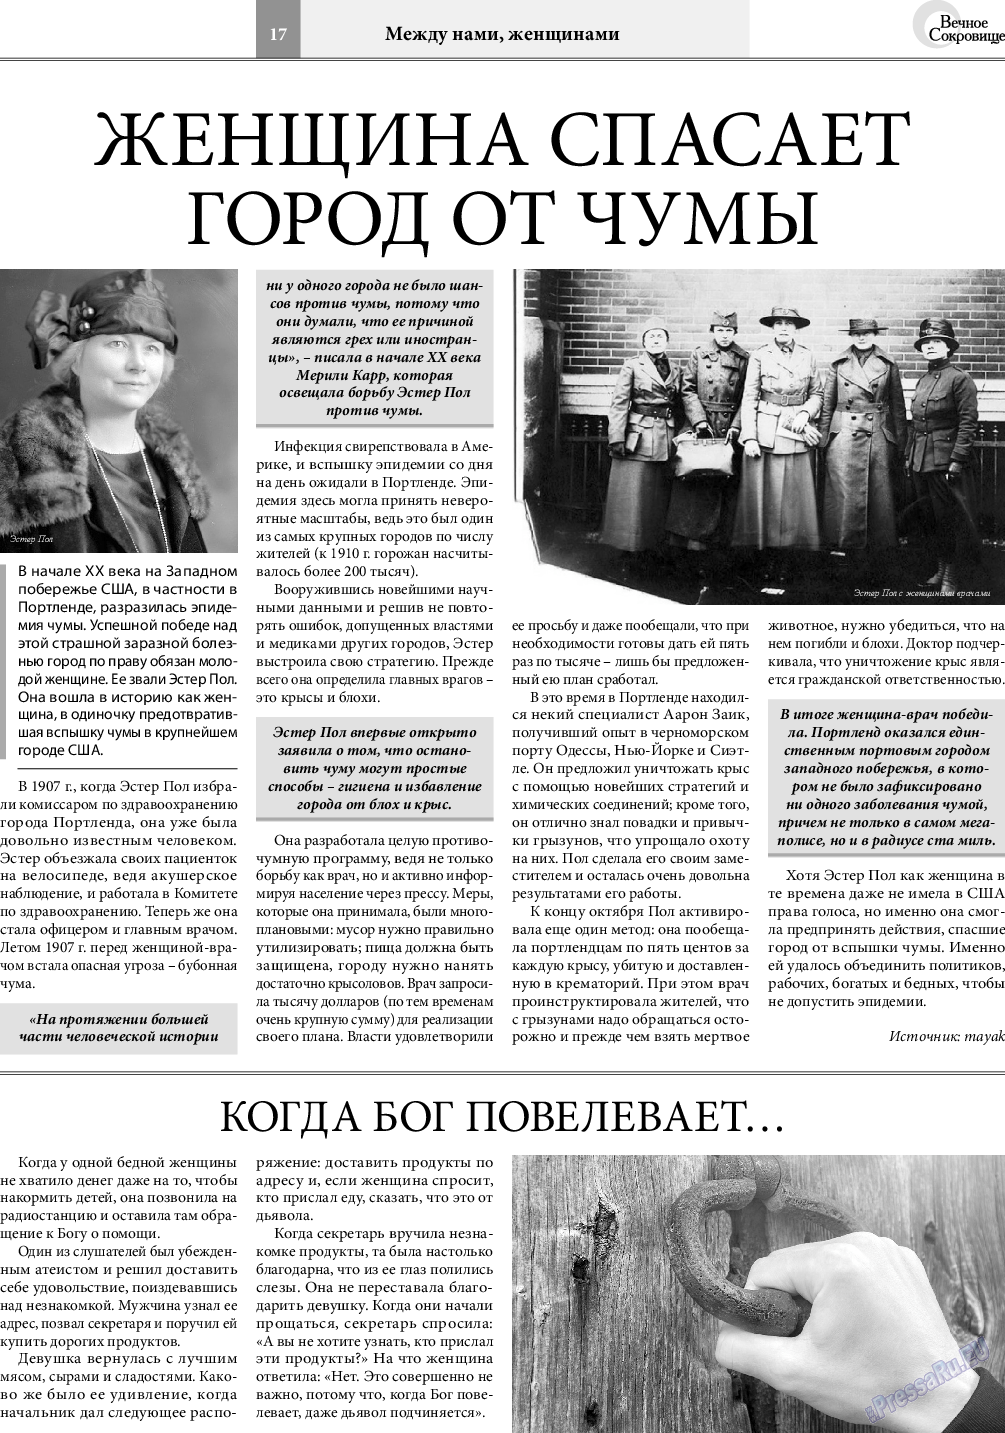 Вечное сокровище, газета. 2021 №5 стр.17